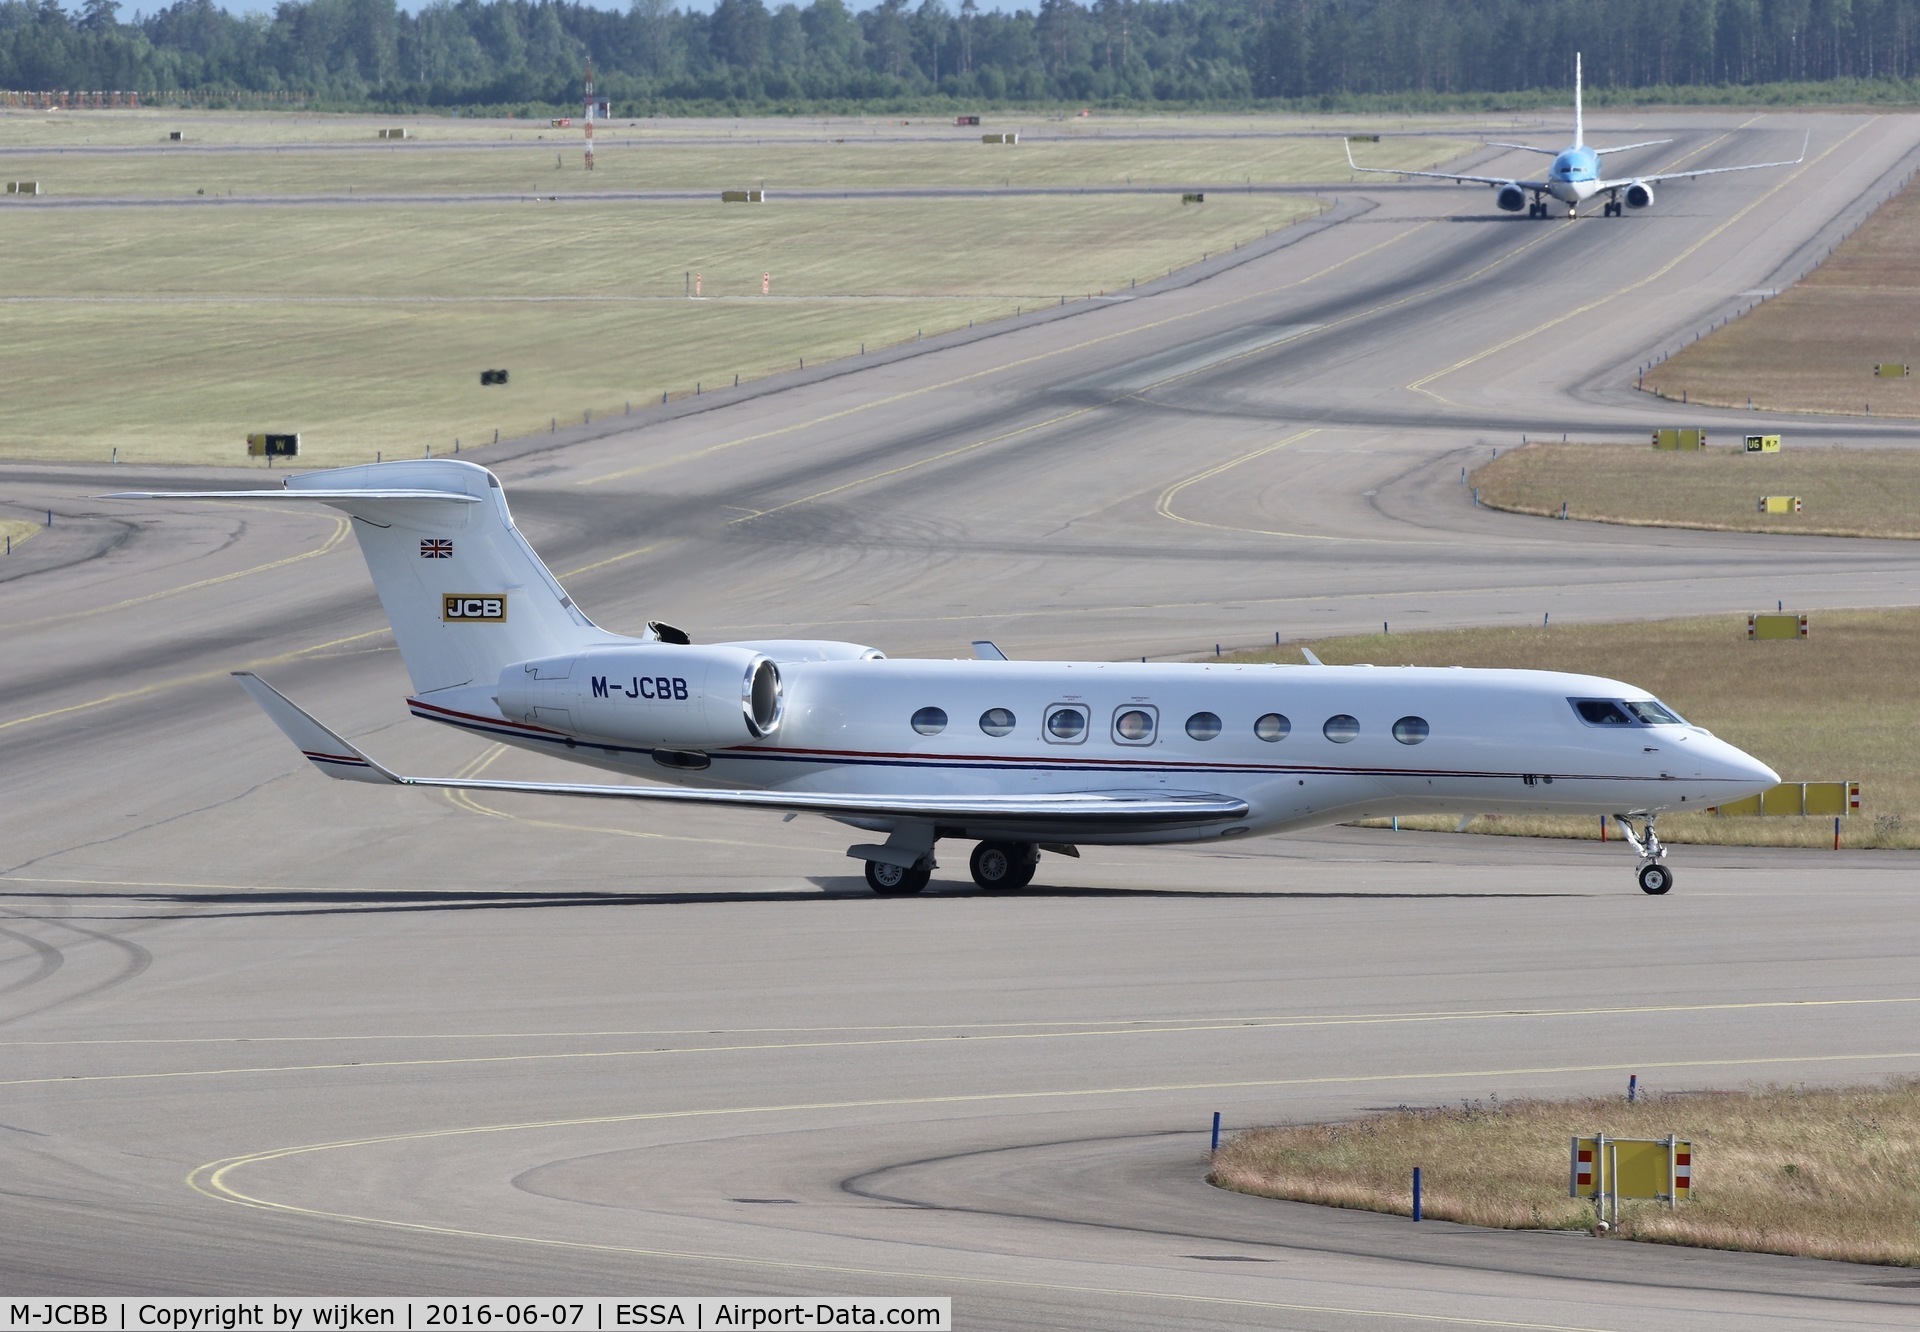 M-JCBB, 2013 Gulfstream Aerospace G650 (G-VI) C/N 6049, Taxiway W